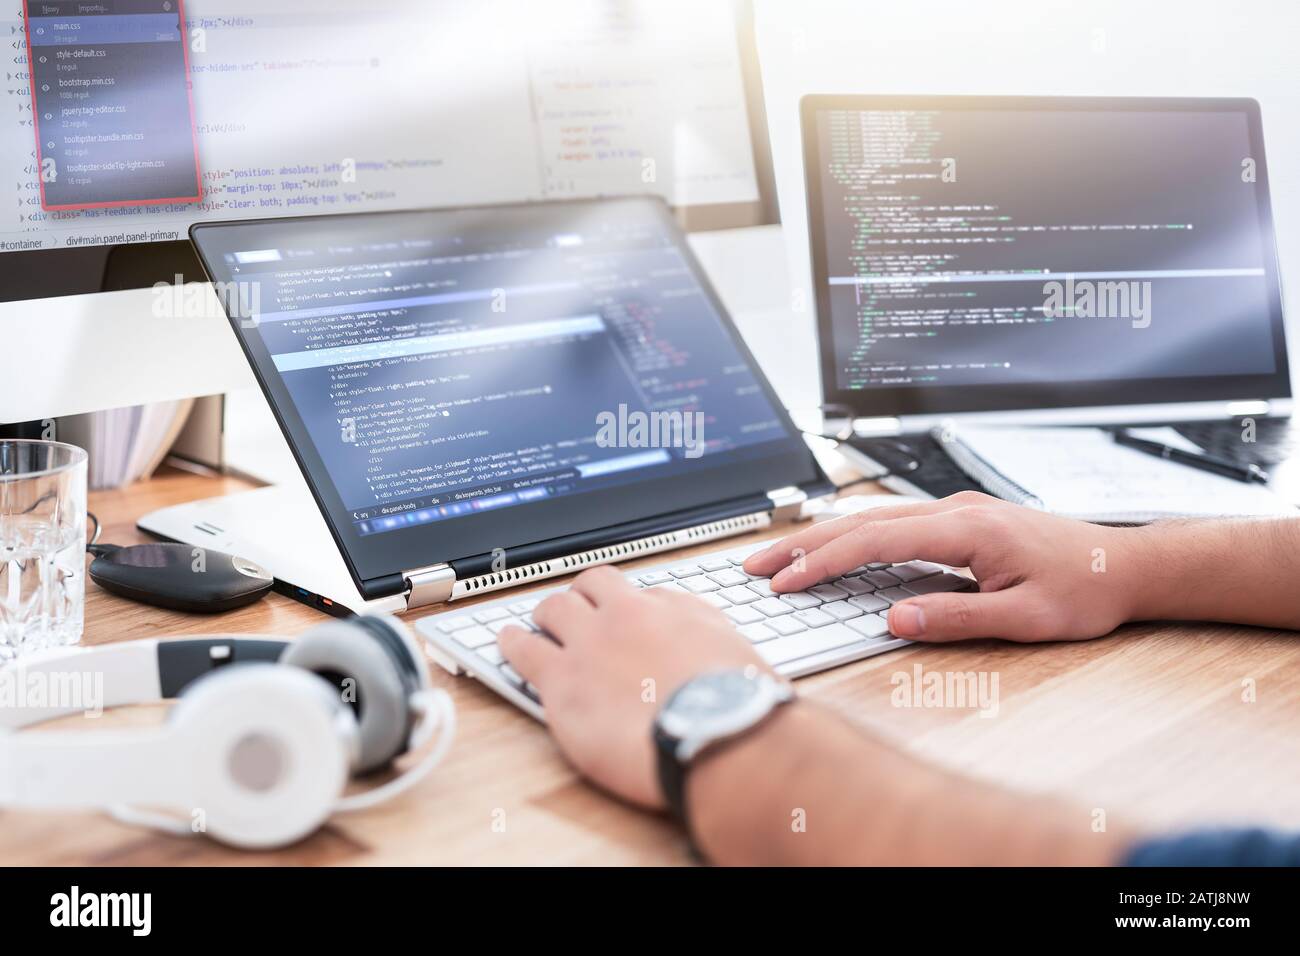 Die Entwicklung Programmierung und Coding Technologies. Website Design. Programmierer in einer Software arbeiten, entwickeln Unternehmen Office. Stockfoto